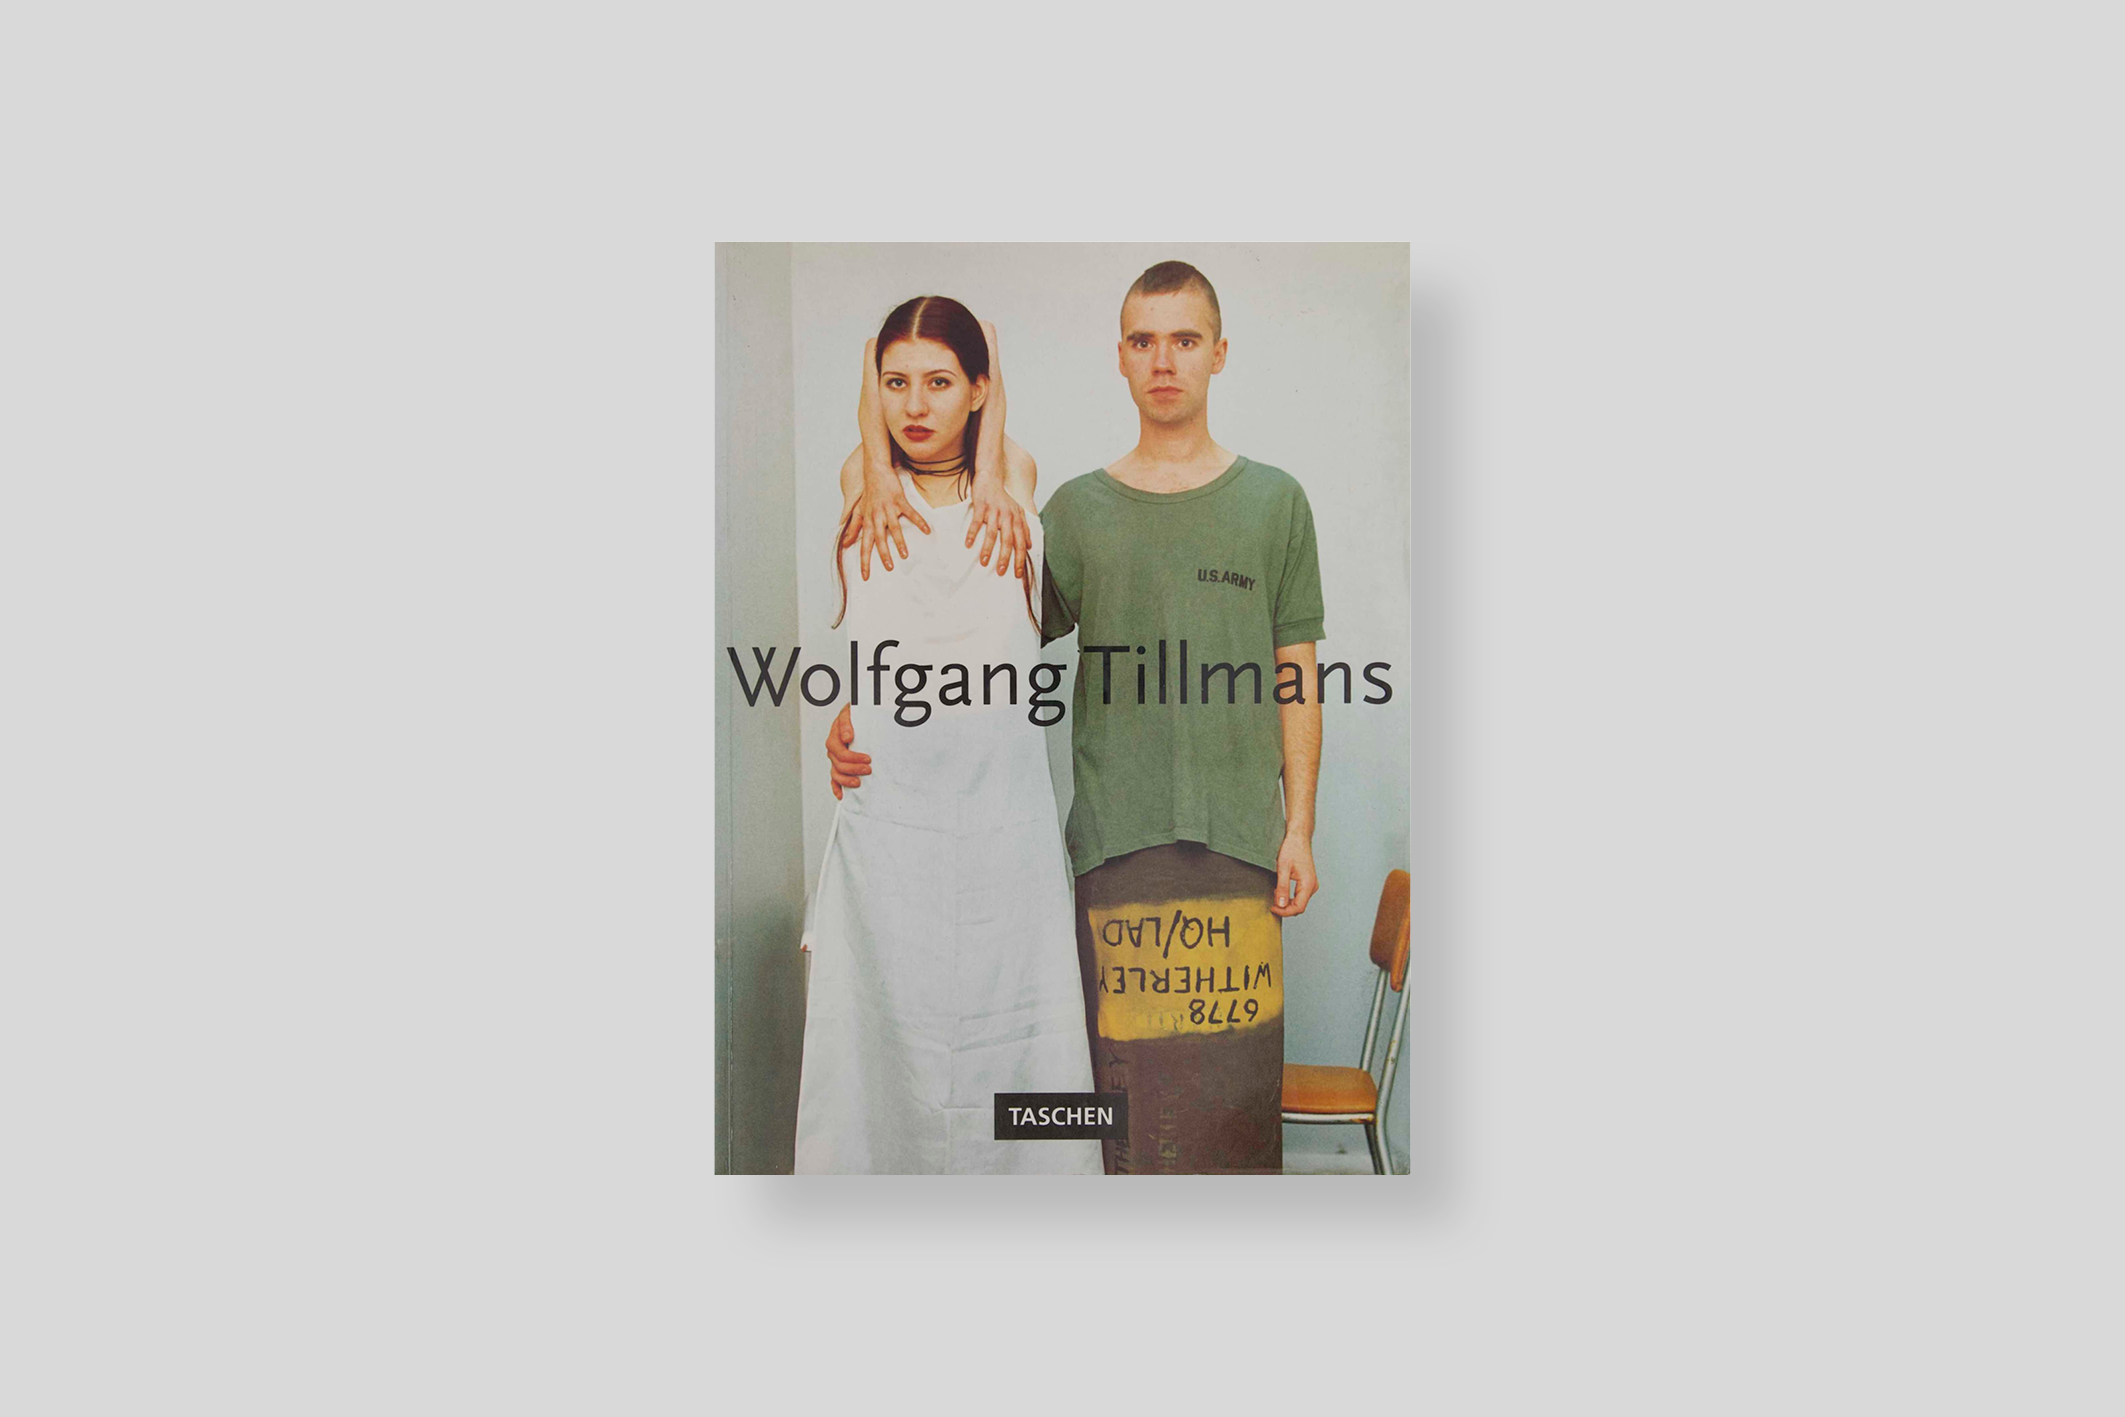 wolfgang-tillmans-taschen-cover-2